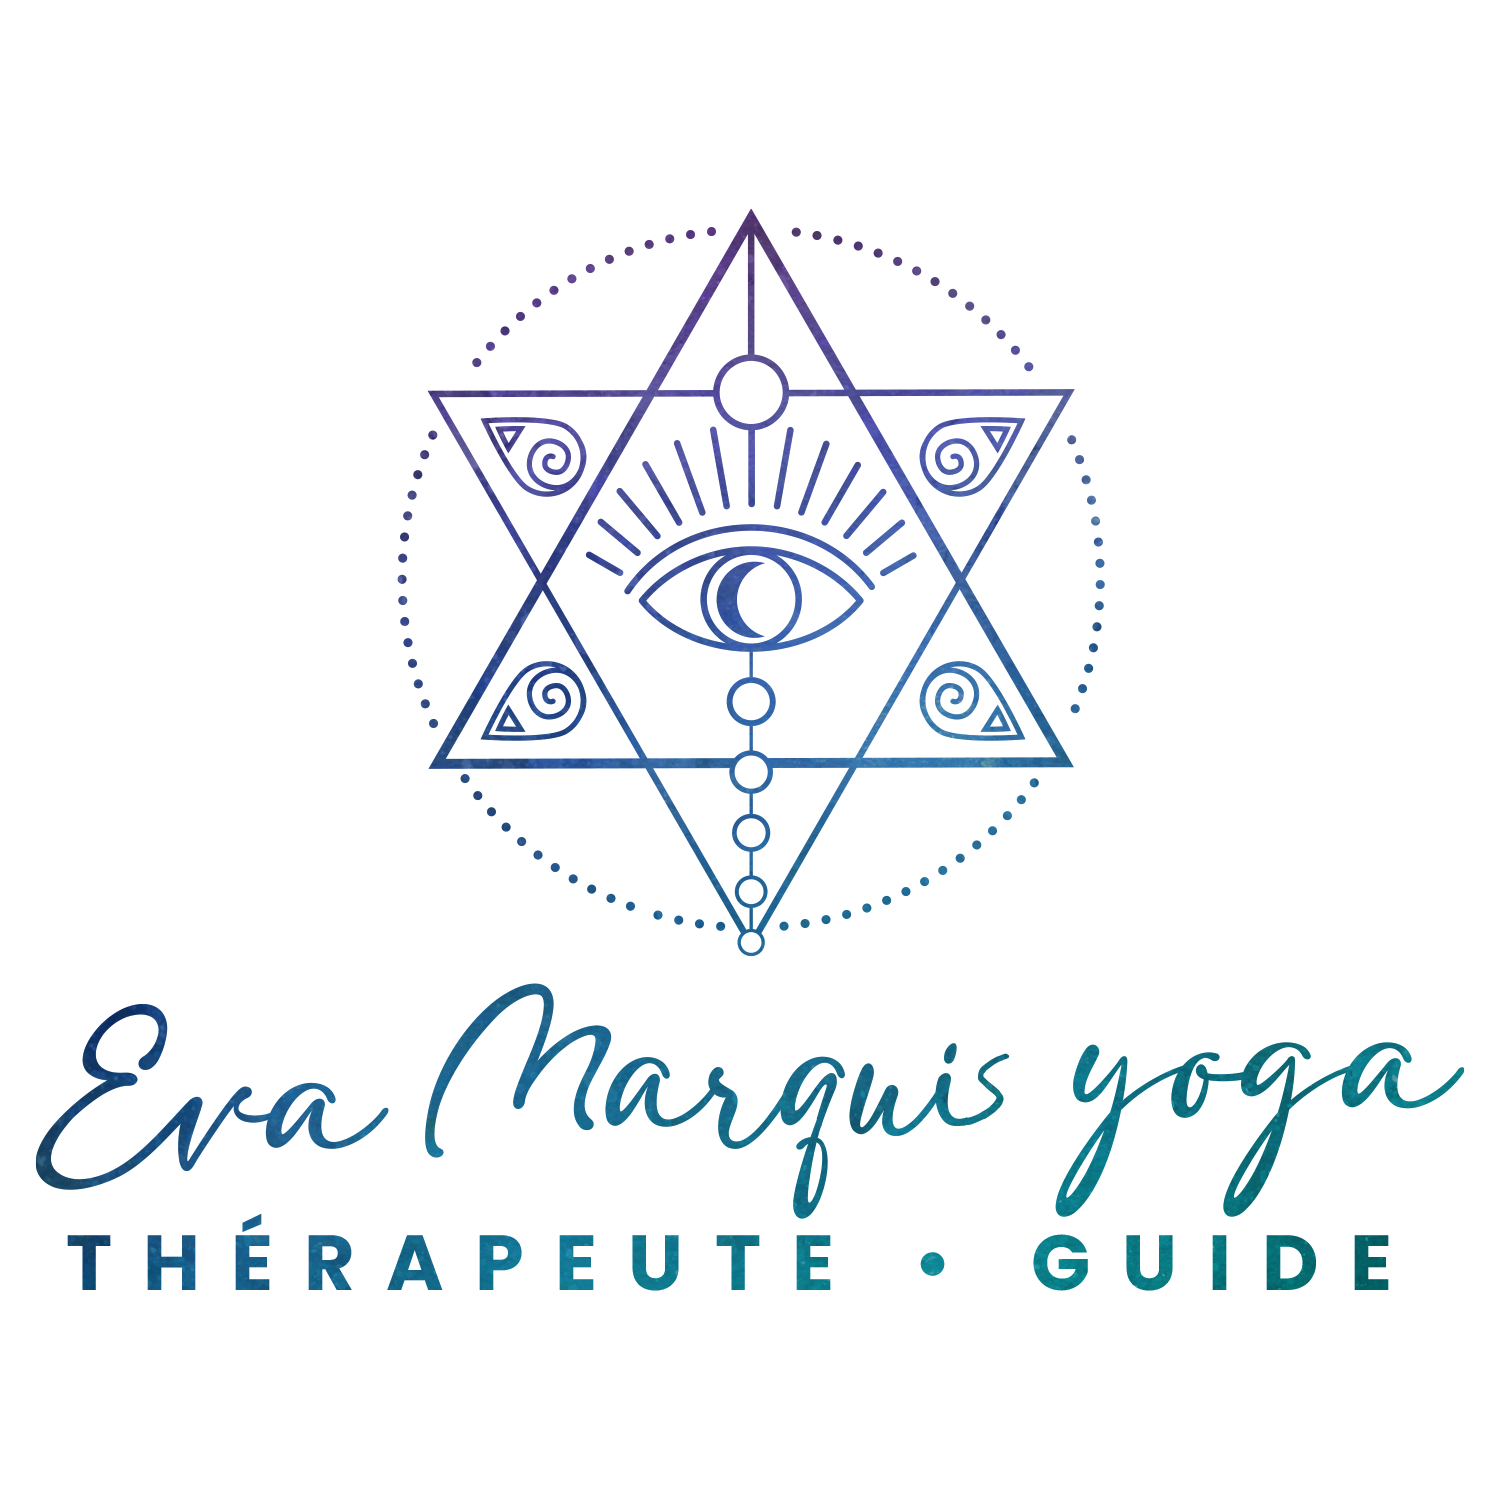 Eva Marquis Yoga - Guide & Thrapeute